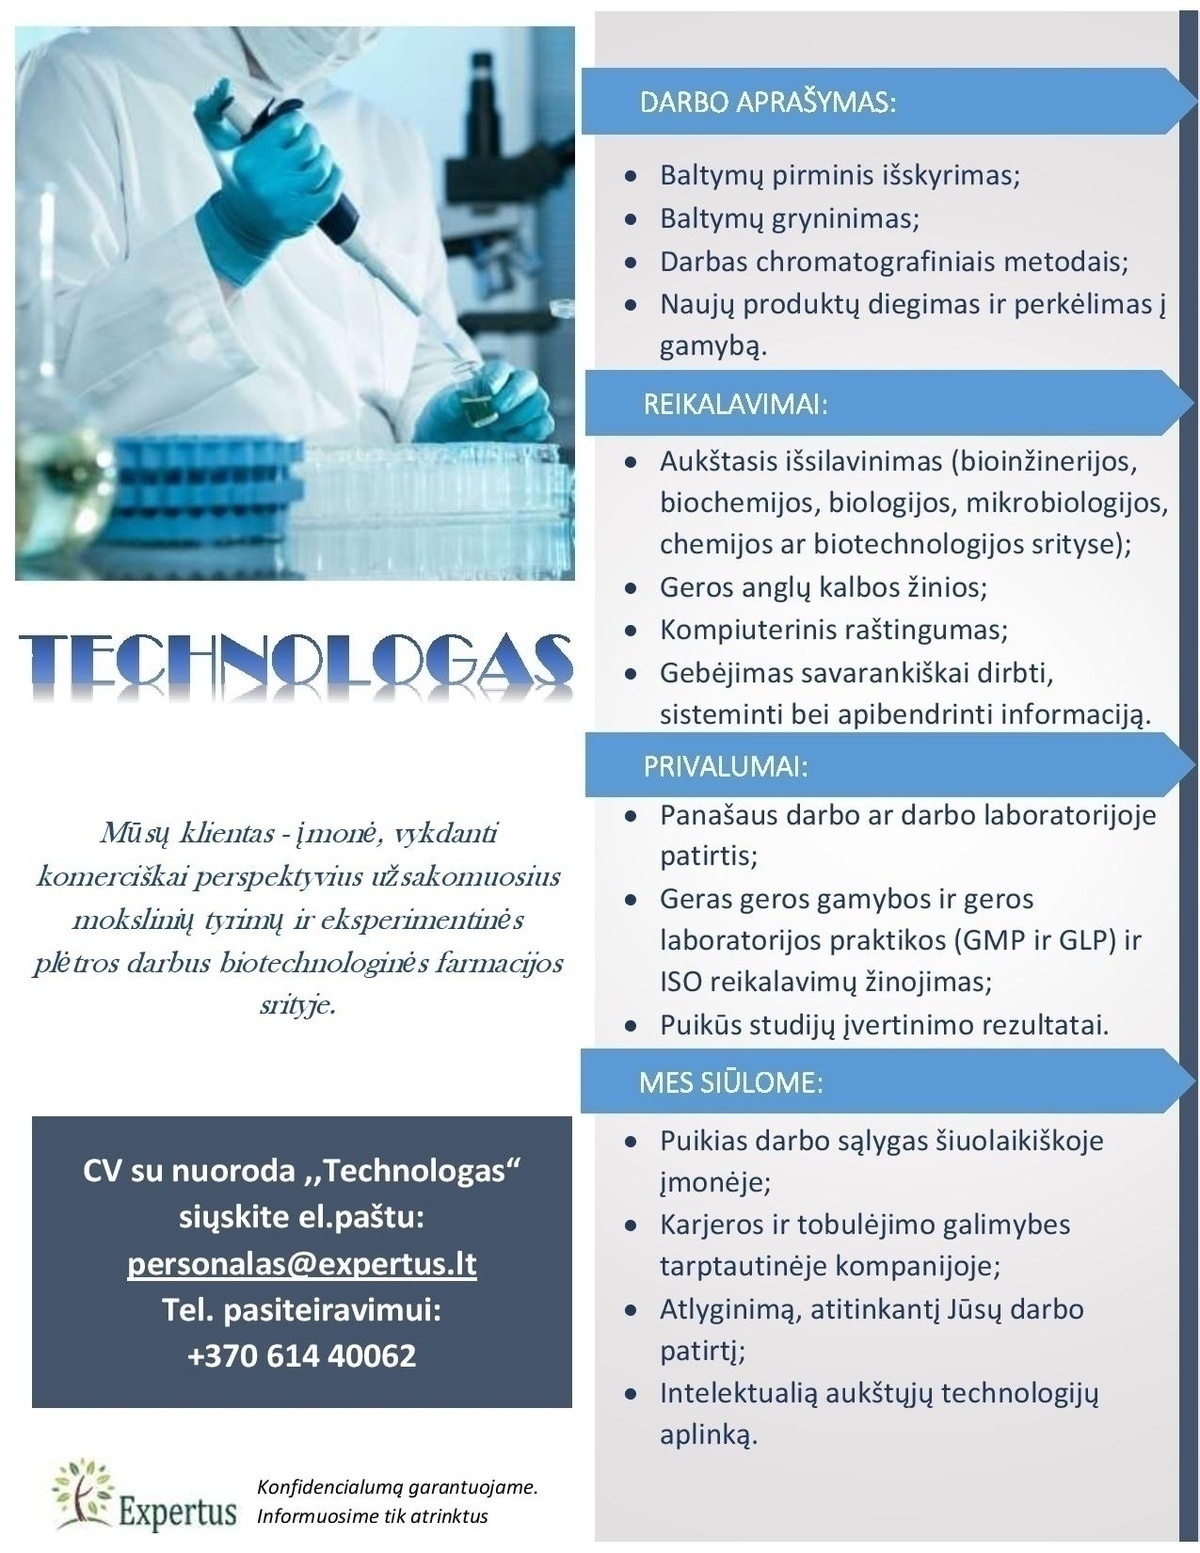 Expertus LT, UAB Technologas (biotechnologinė farmacija)